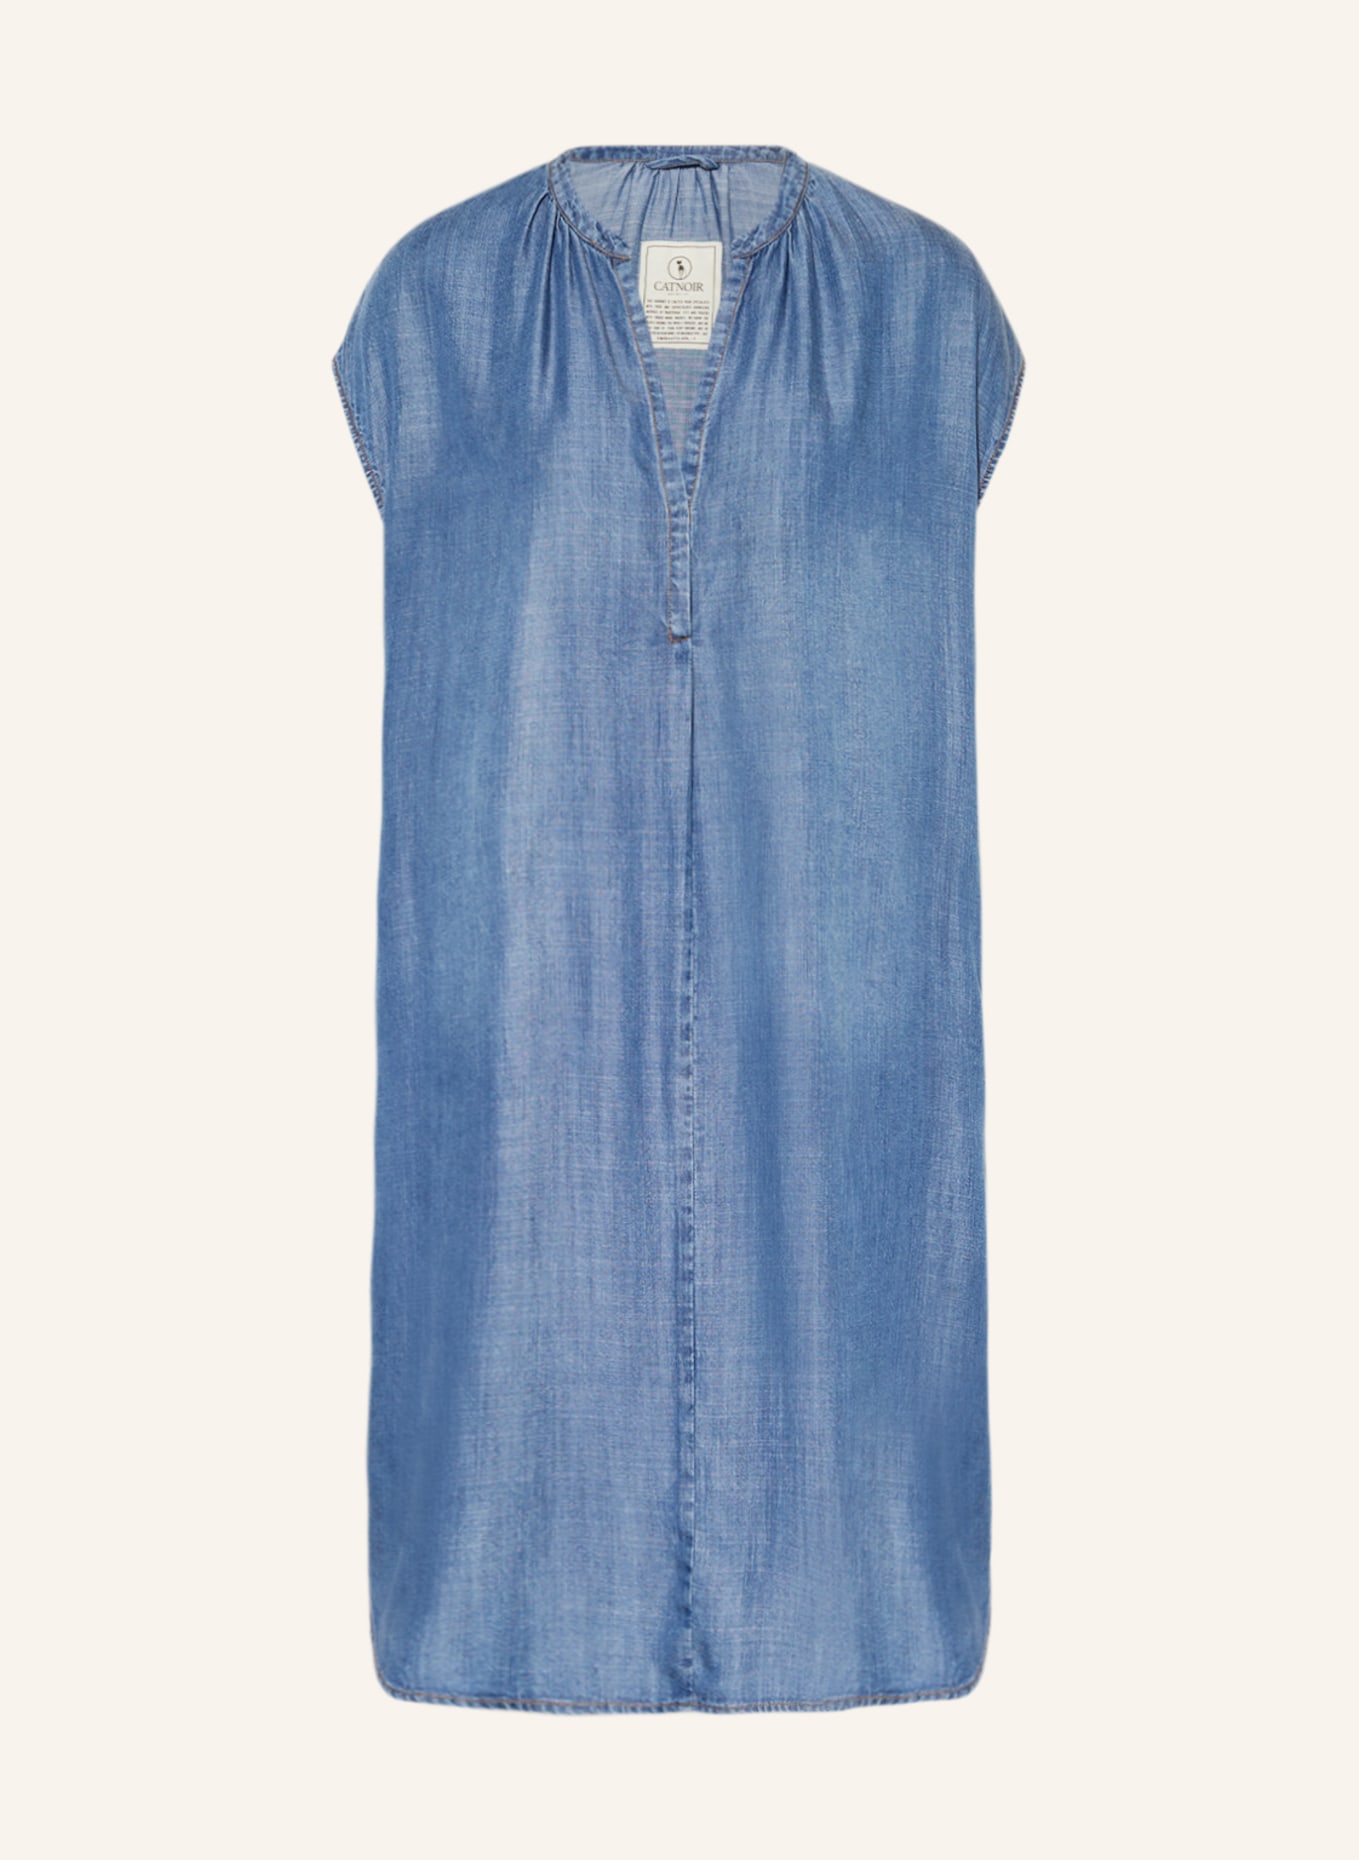 CATNOIR Denim dress, Color: 68 jeans (Image 1)